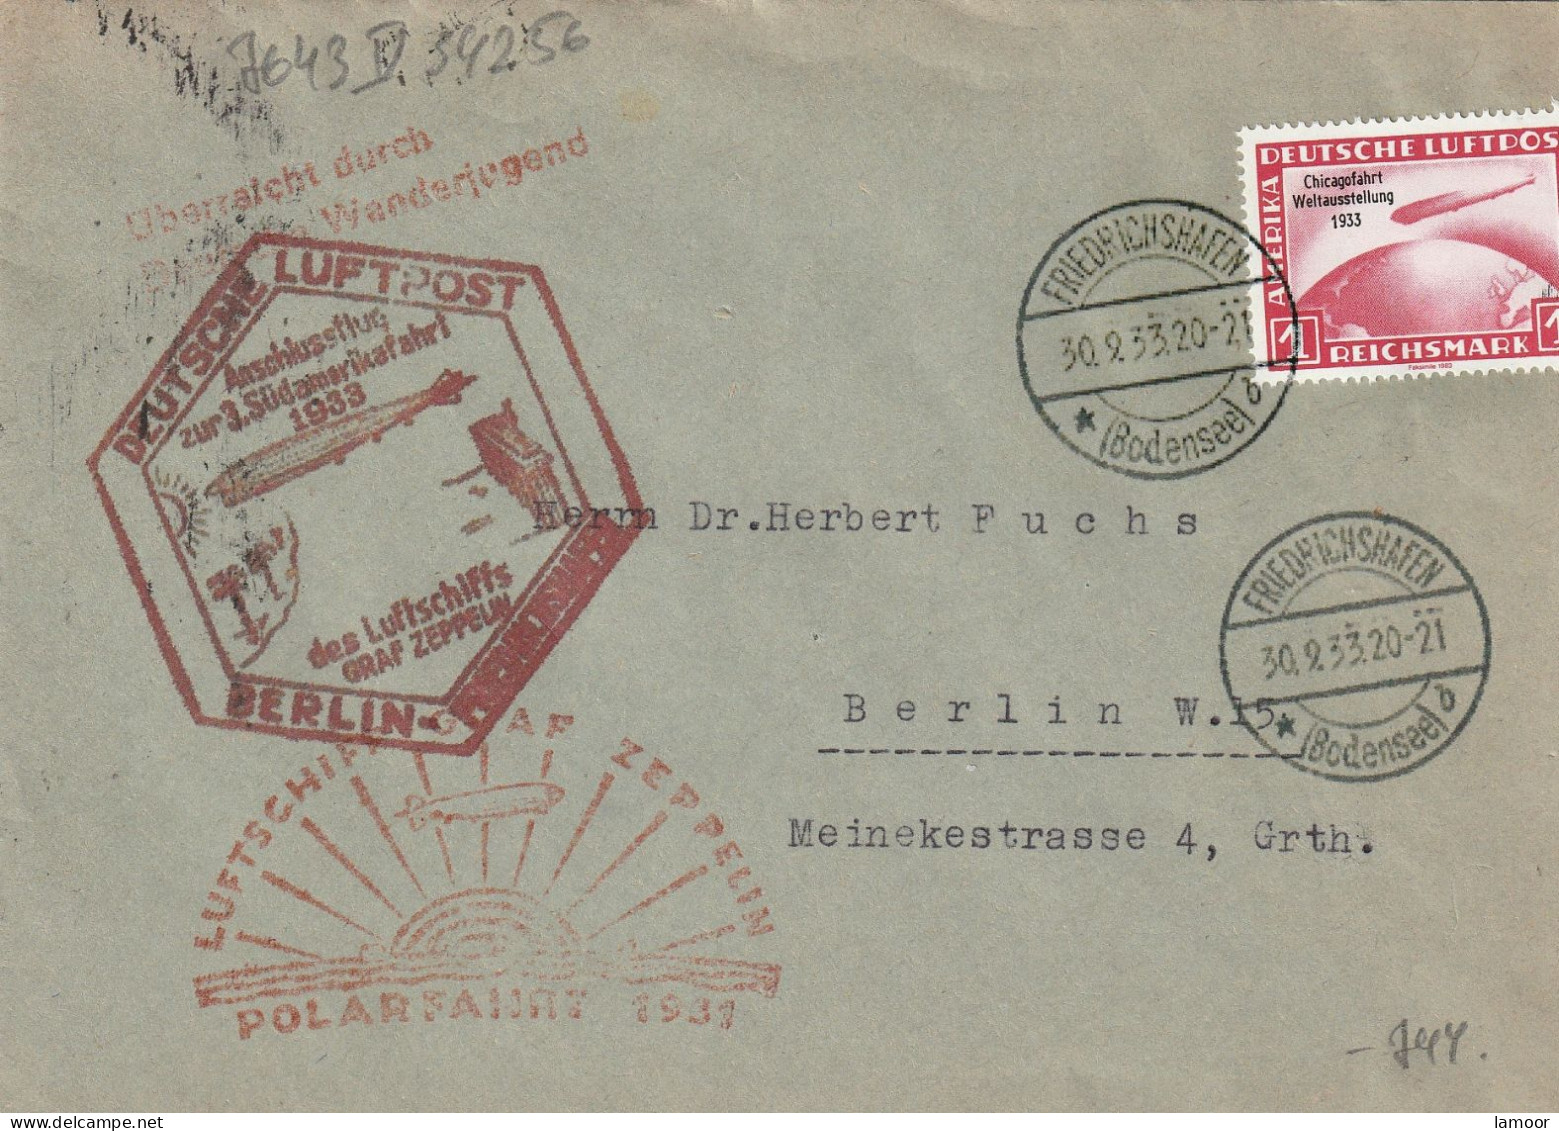 Zeppelin, Zeppelinpost LZ 127, Polarfahrt, 1933,  Brief Graf Zeppelin  REPRODUKTION FÄLSCHUNG KOPIE - Street Merchants